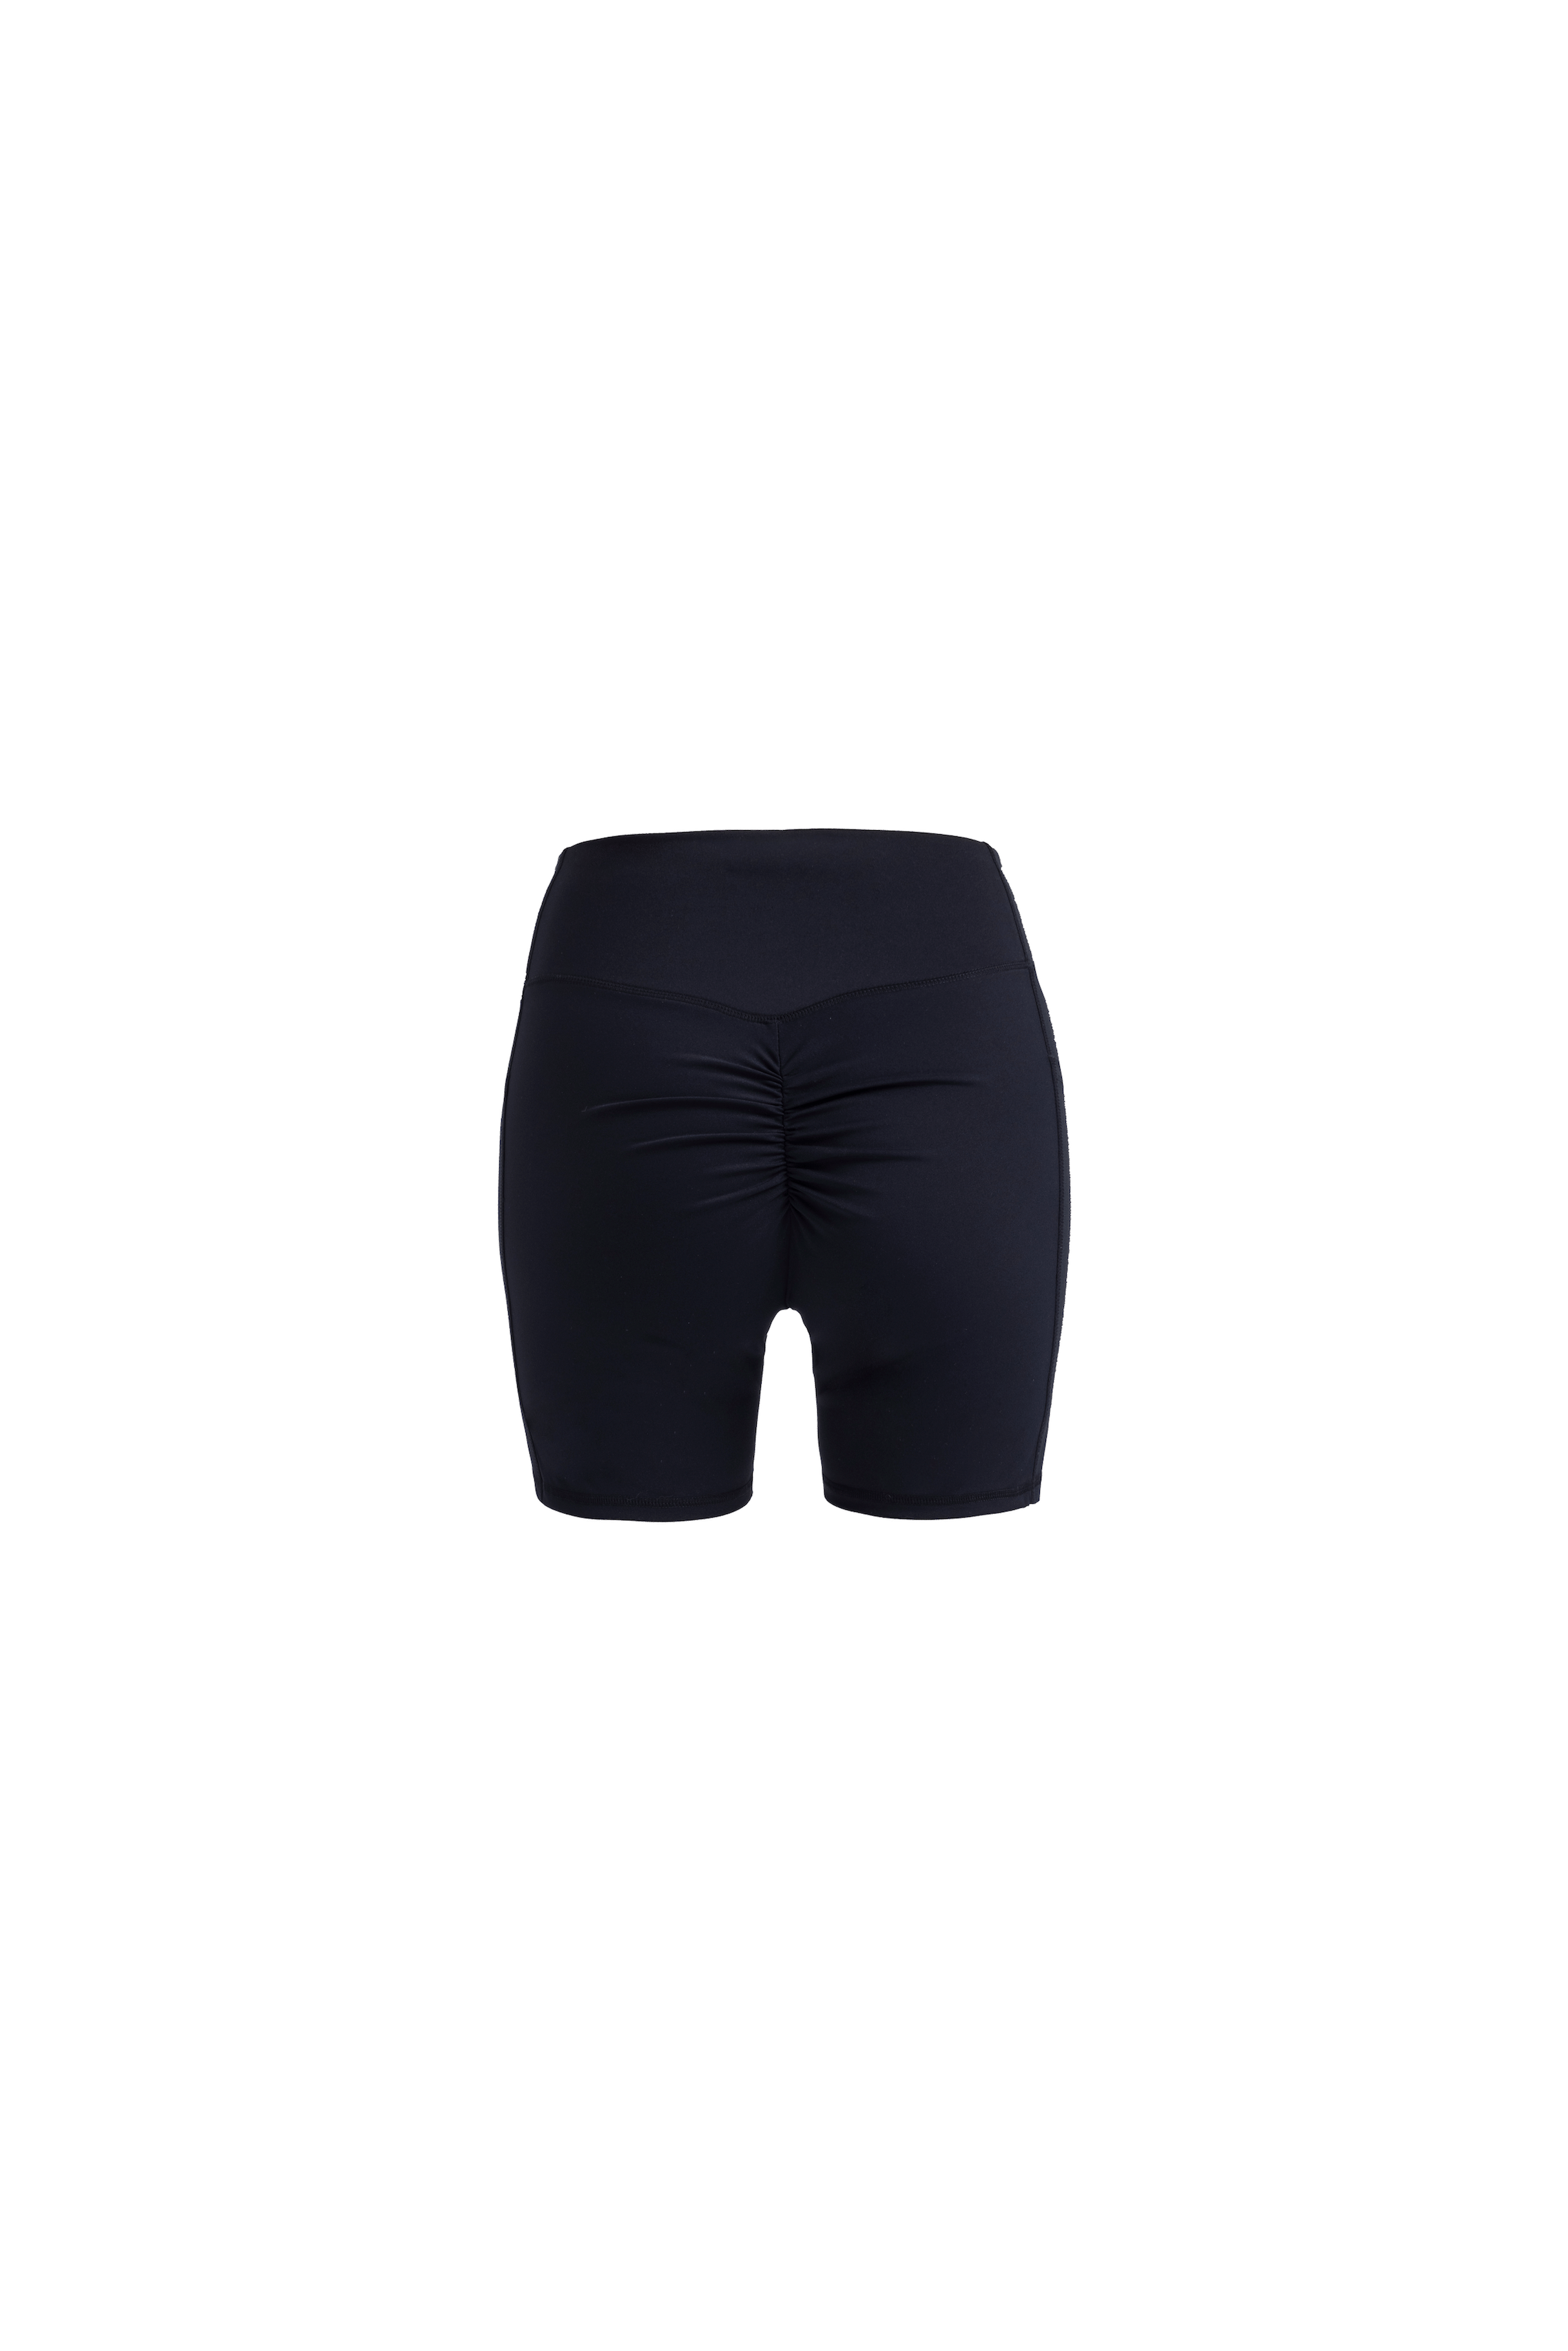 Womens Quality Bermuda shorts, Ladies Cycling shorts, short leggings